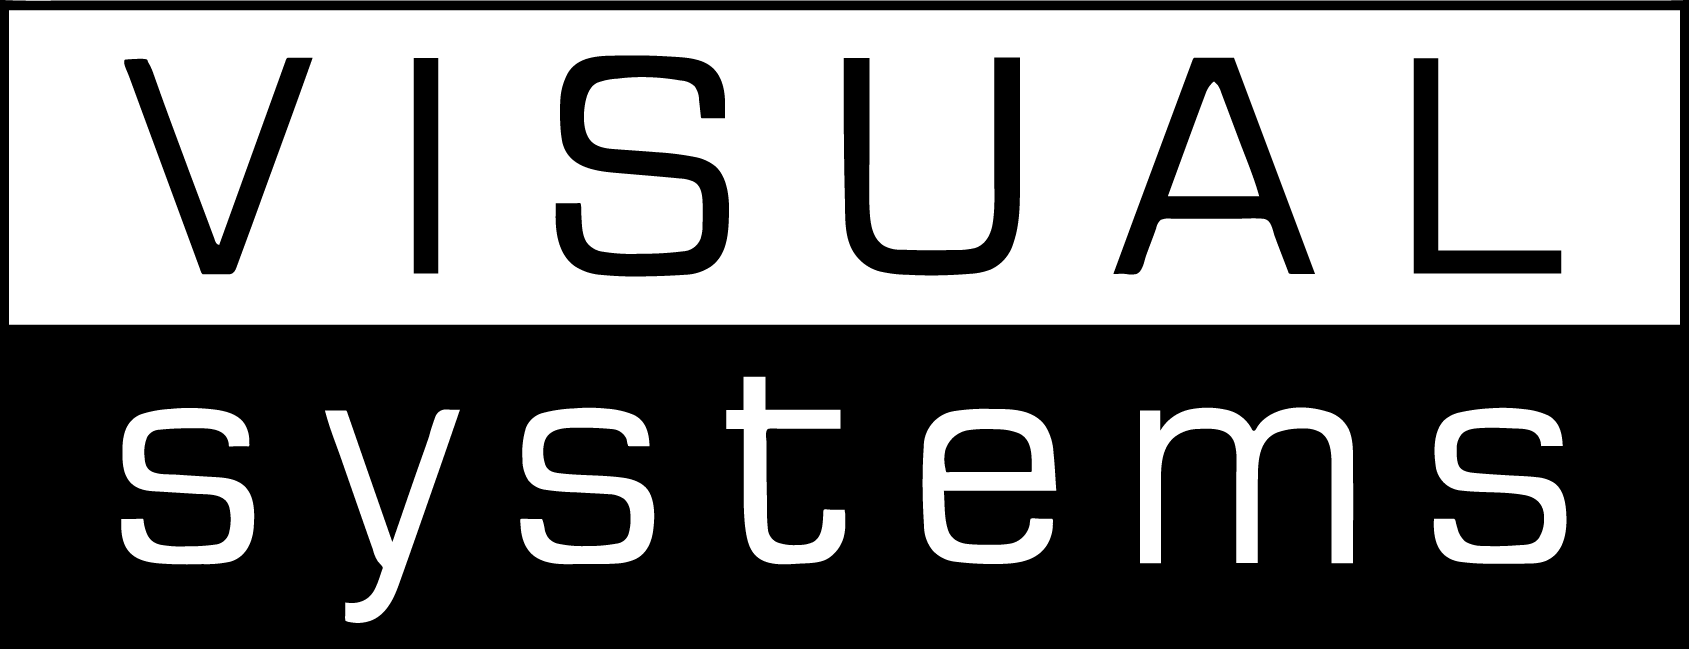 ビジュアル・システムのロゴ